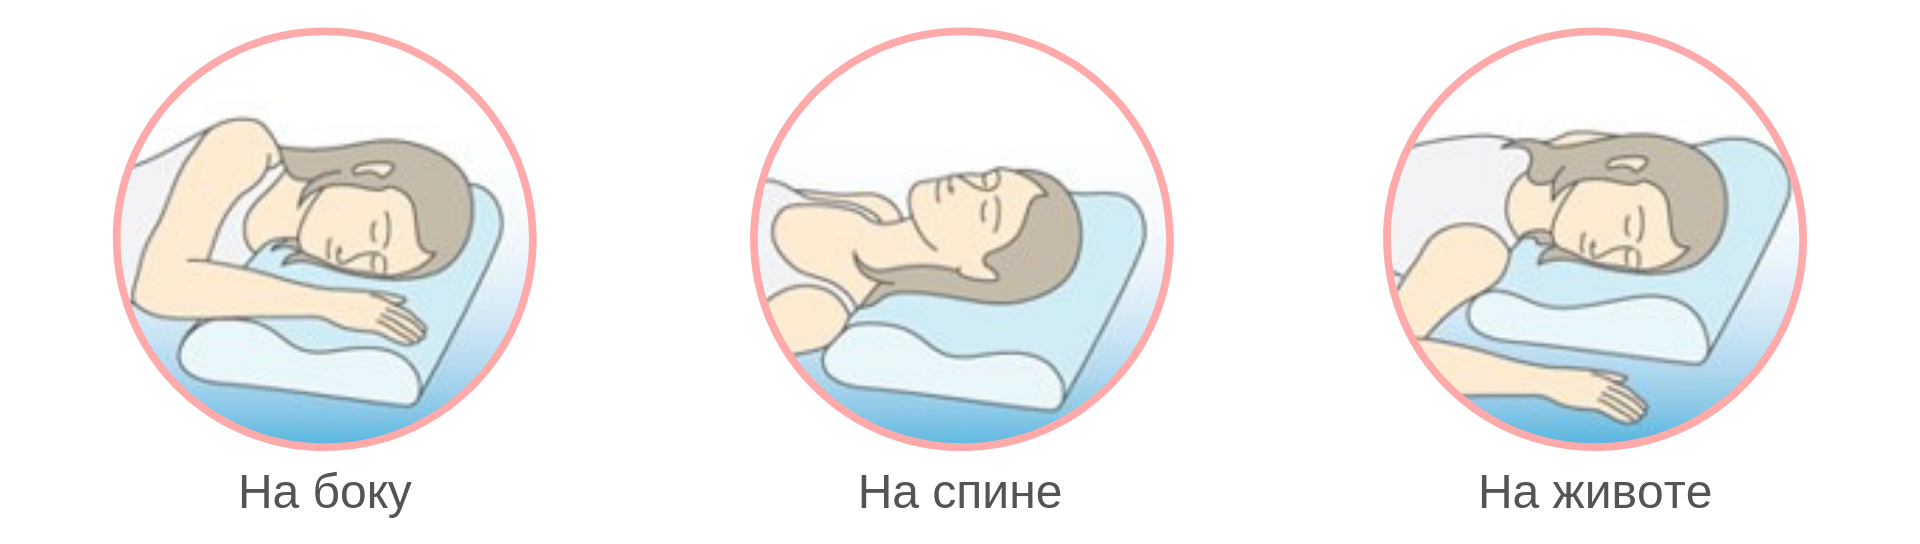 Как правильно спиш. Ортопедическая подушка иконка. Как правильно спать на ортопедической подушке. Ортопедическая подушка инфографика. Как правильно чпать на ортопедическлй пожцшке.